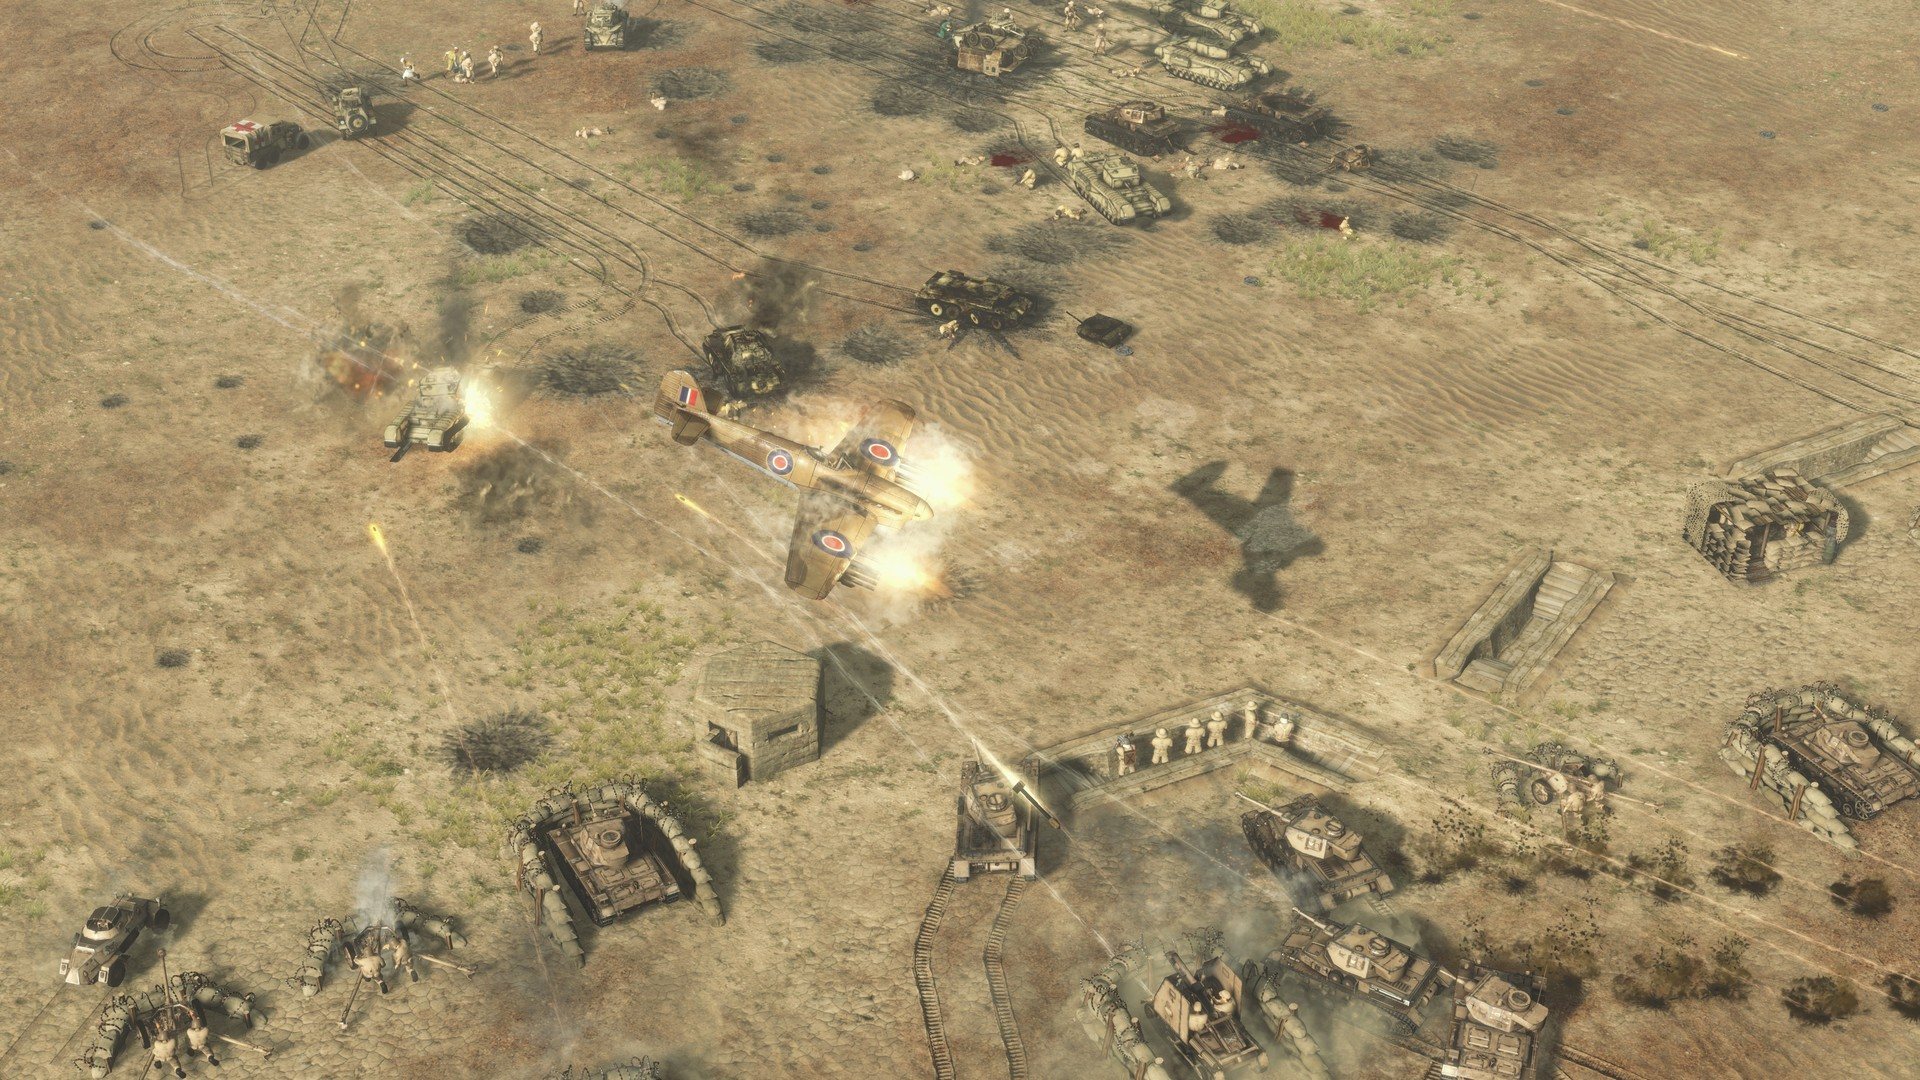 Sudden Strike 4 - Africa: Desert War DLC Steam CD Key 1.8$